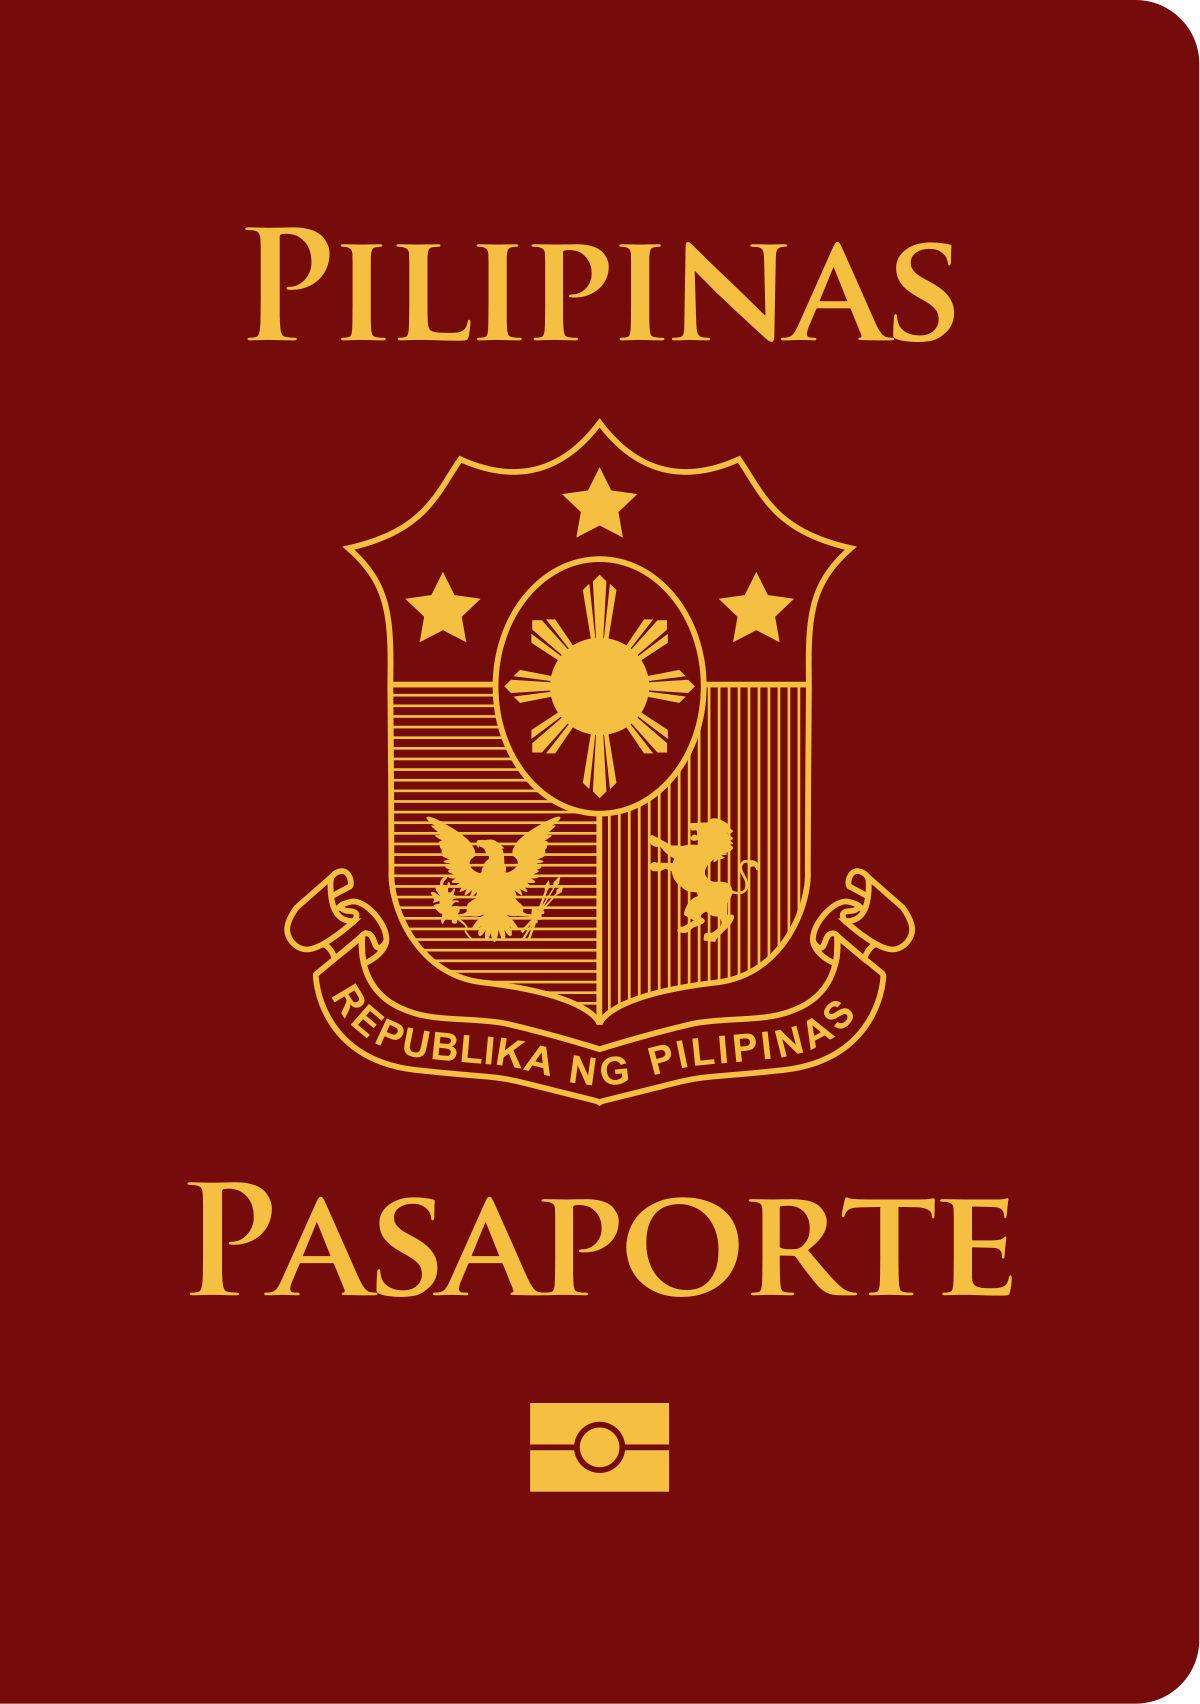 Passport Logo - Philippine passport